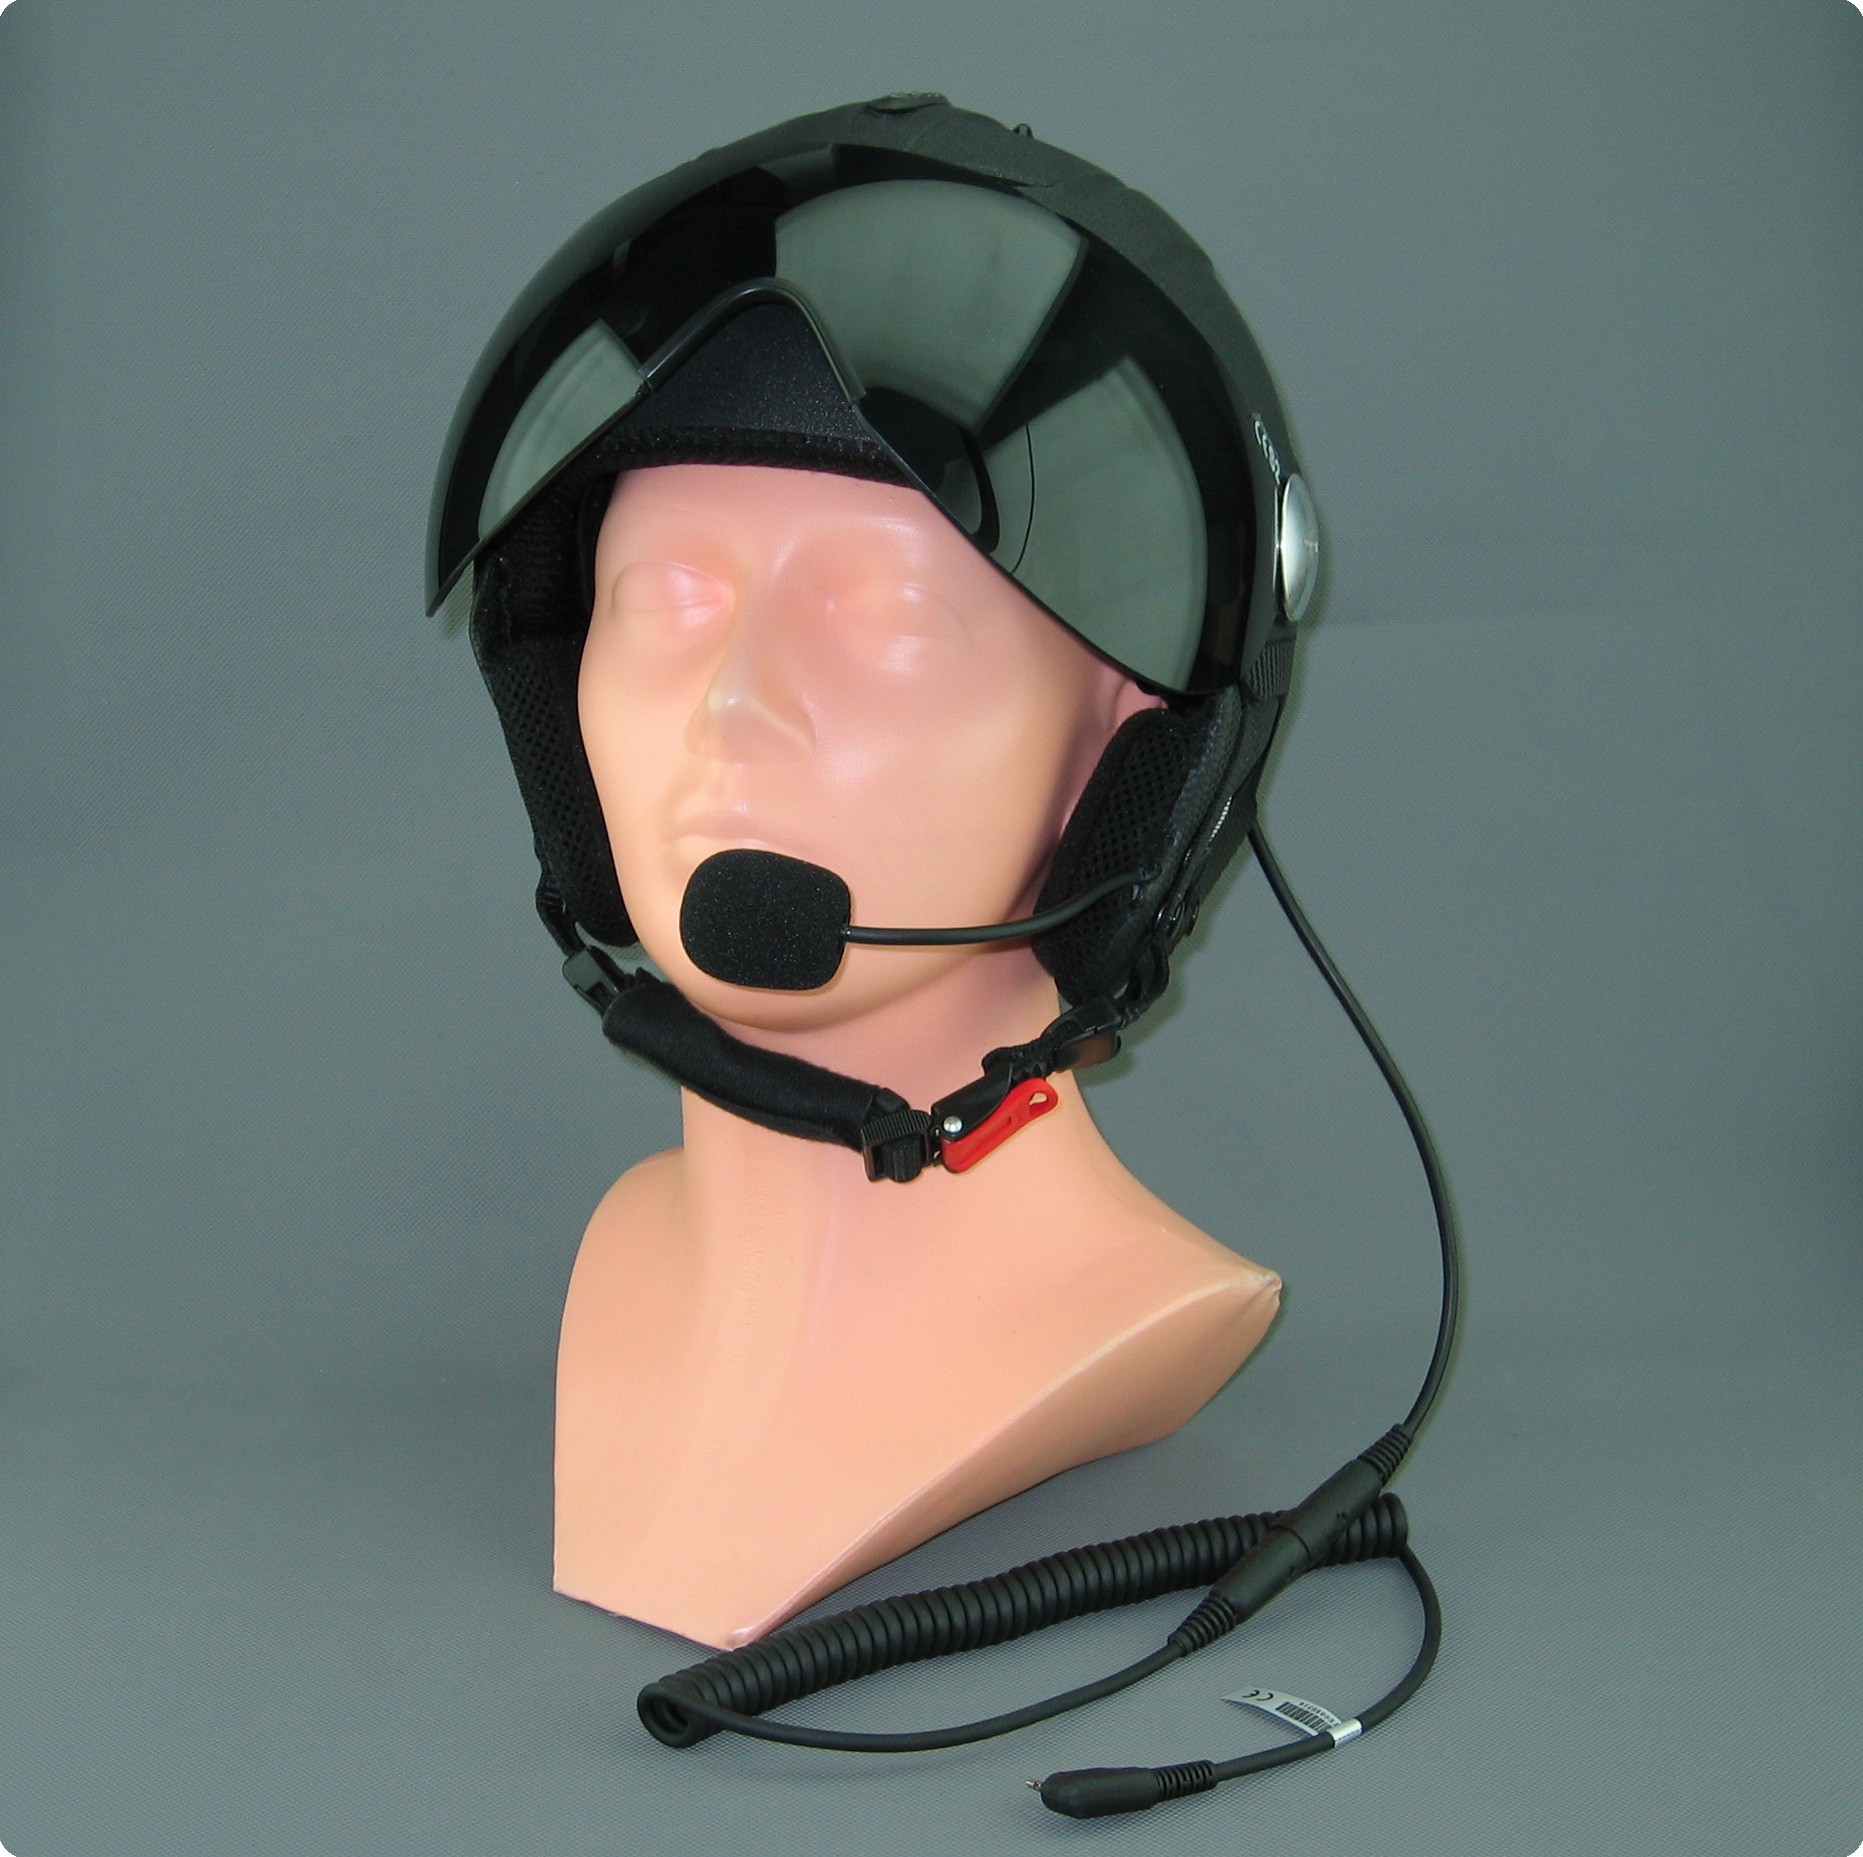 Servicio de instalación de auriculares en el casco deportivo de aviación Icaro® Fly™